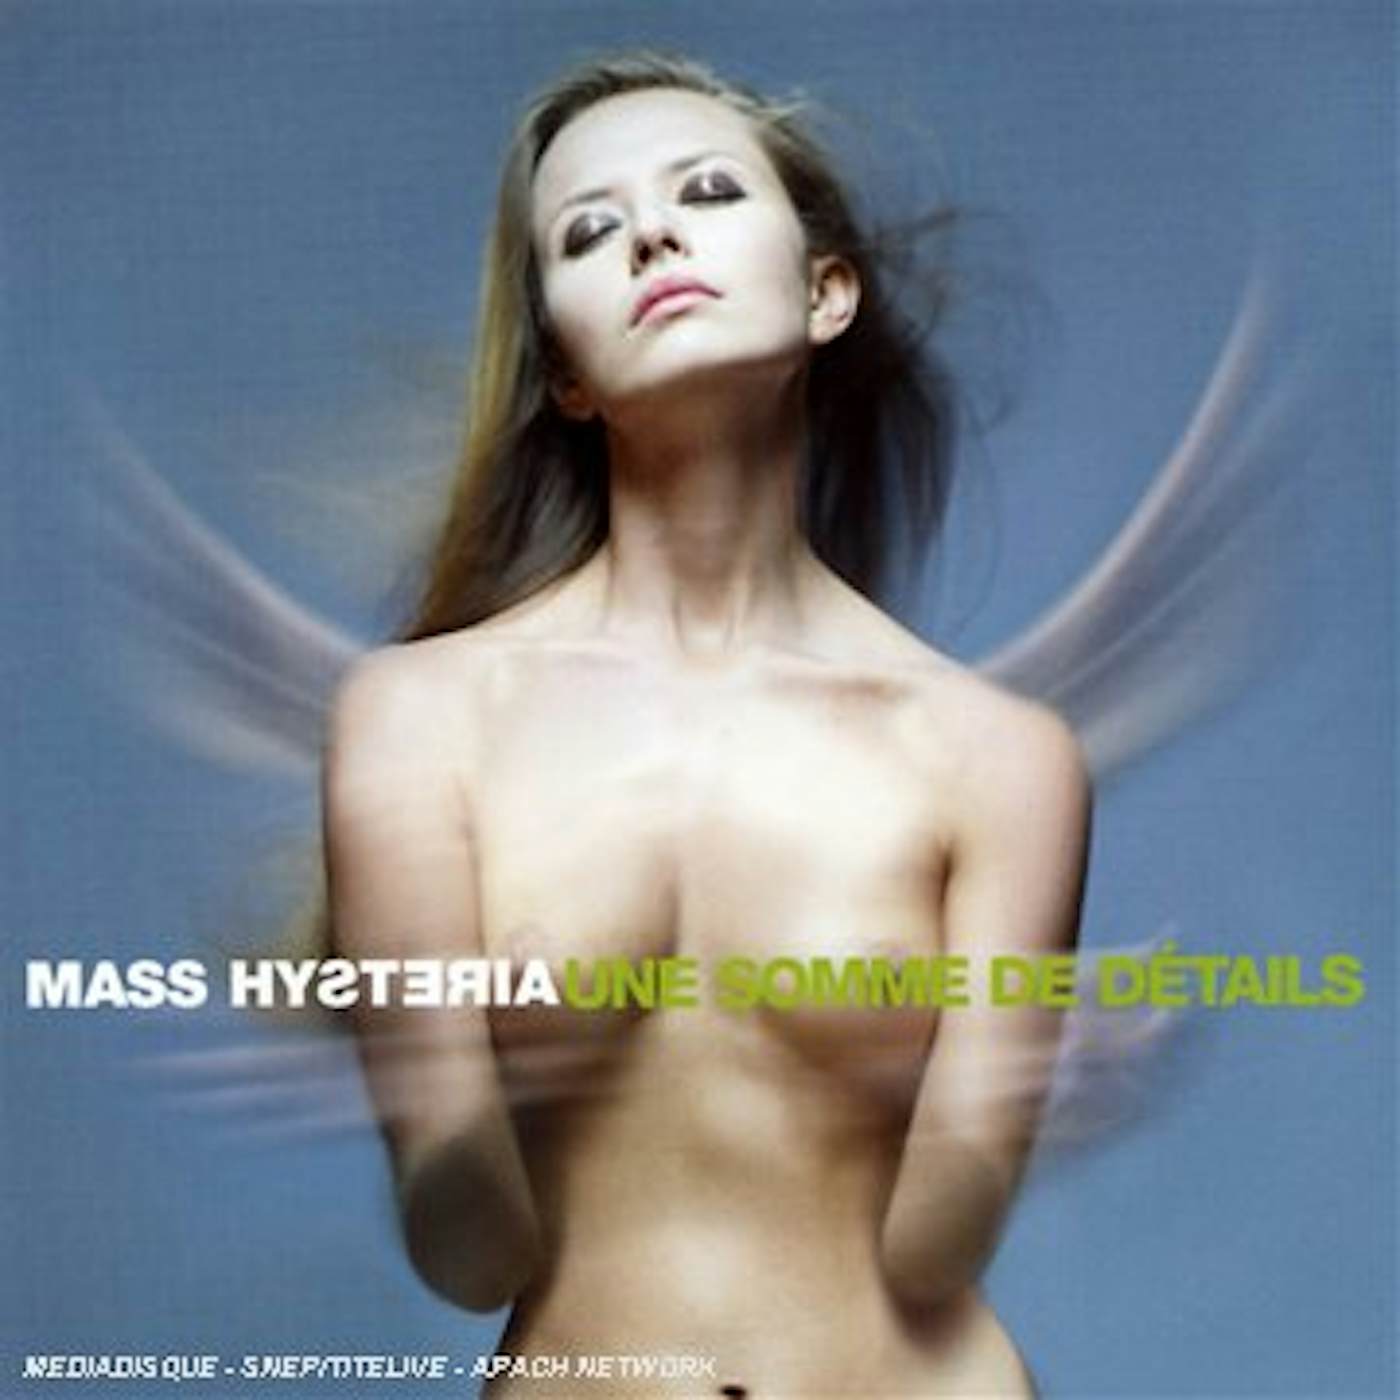 Mass Hysteria UNE SOMME DE DETAILS CD